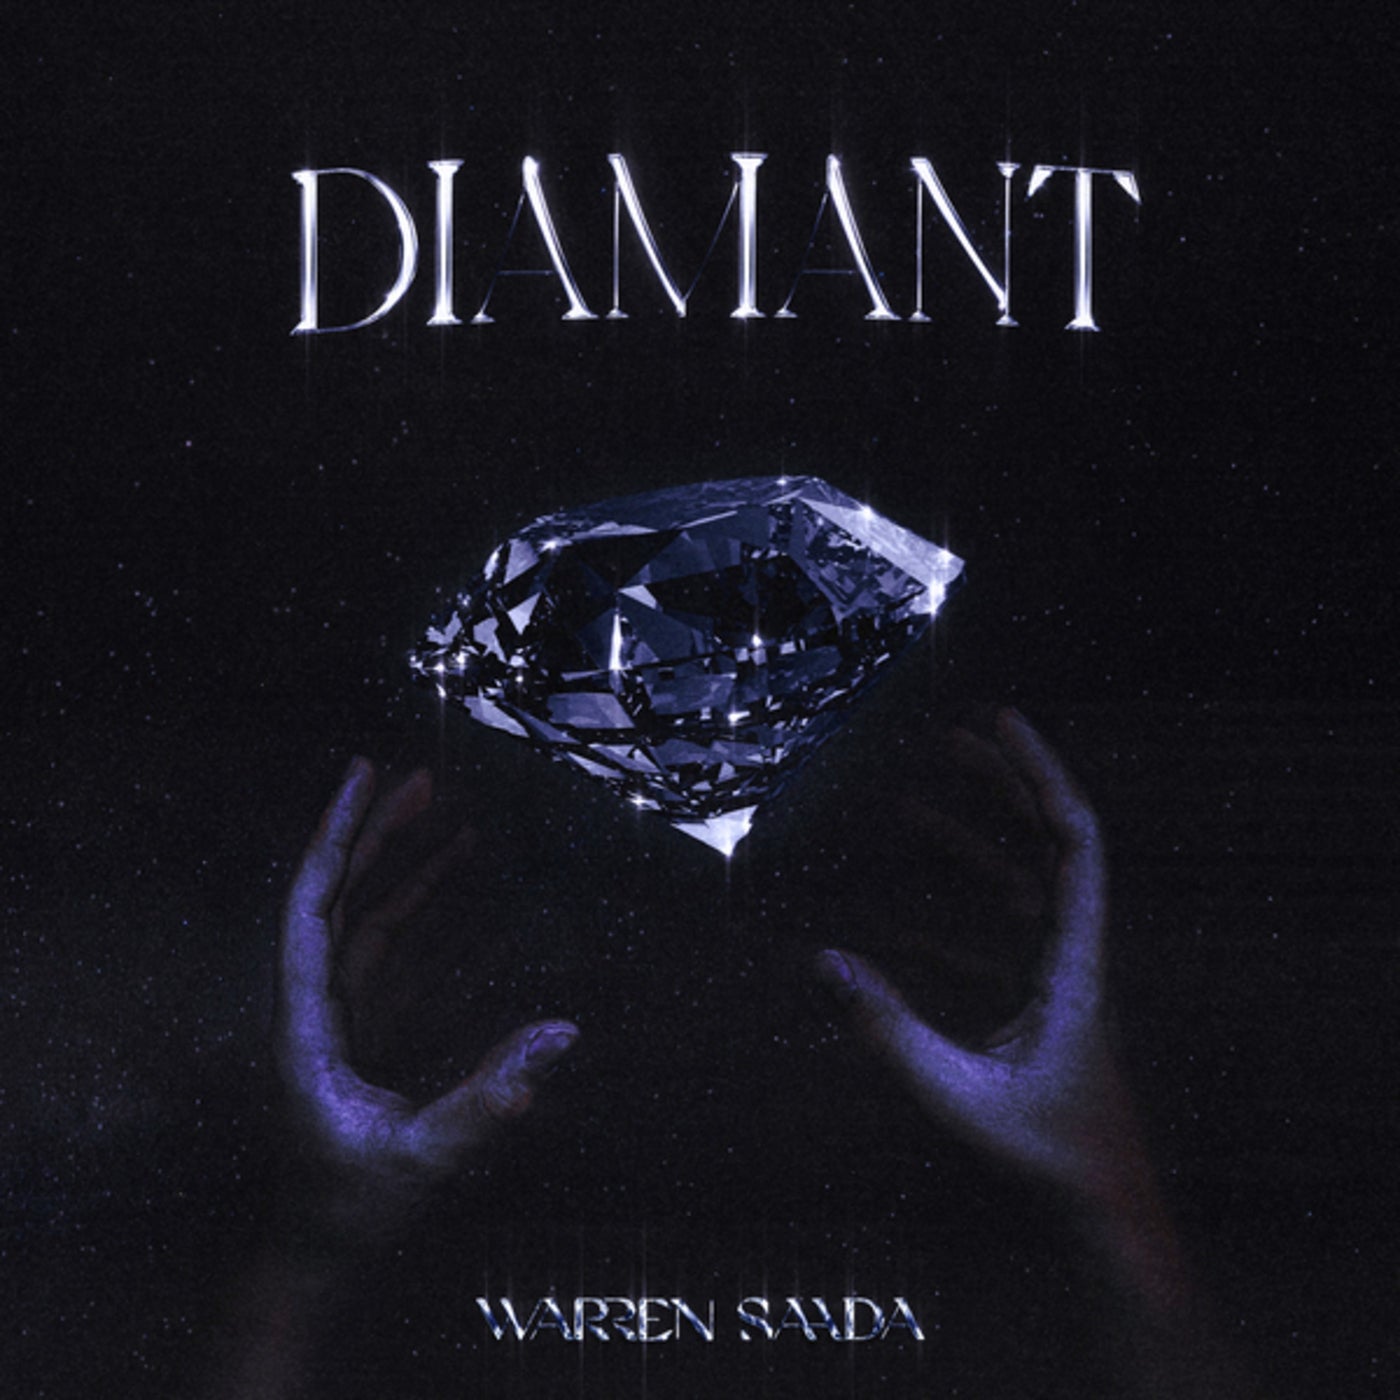 Diamant by Warren Saada on Beatsource